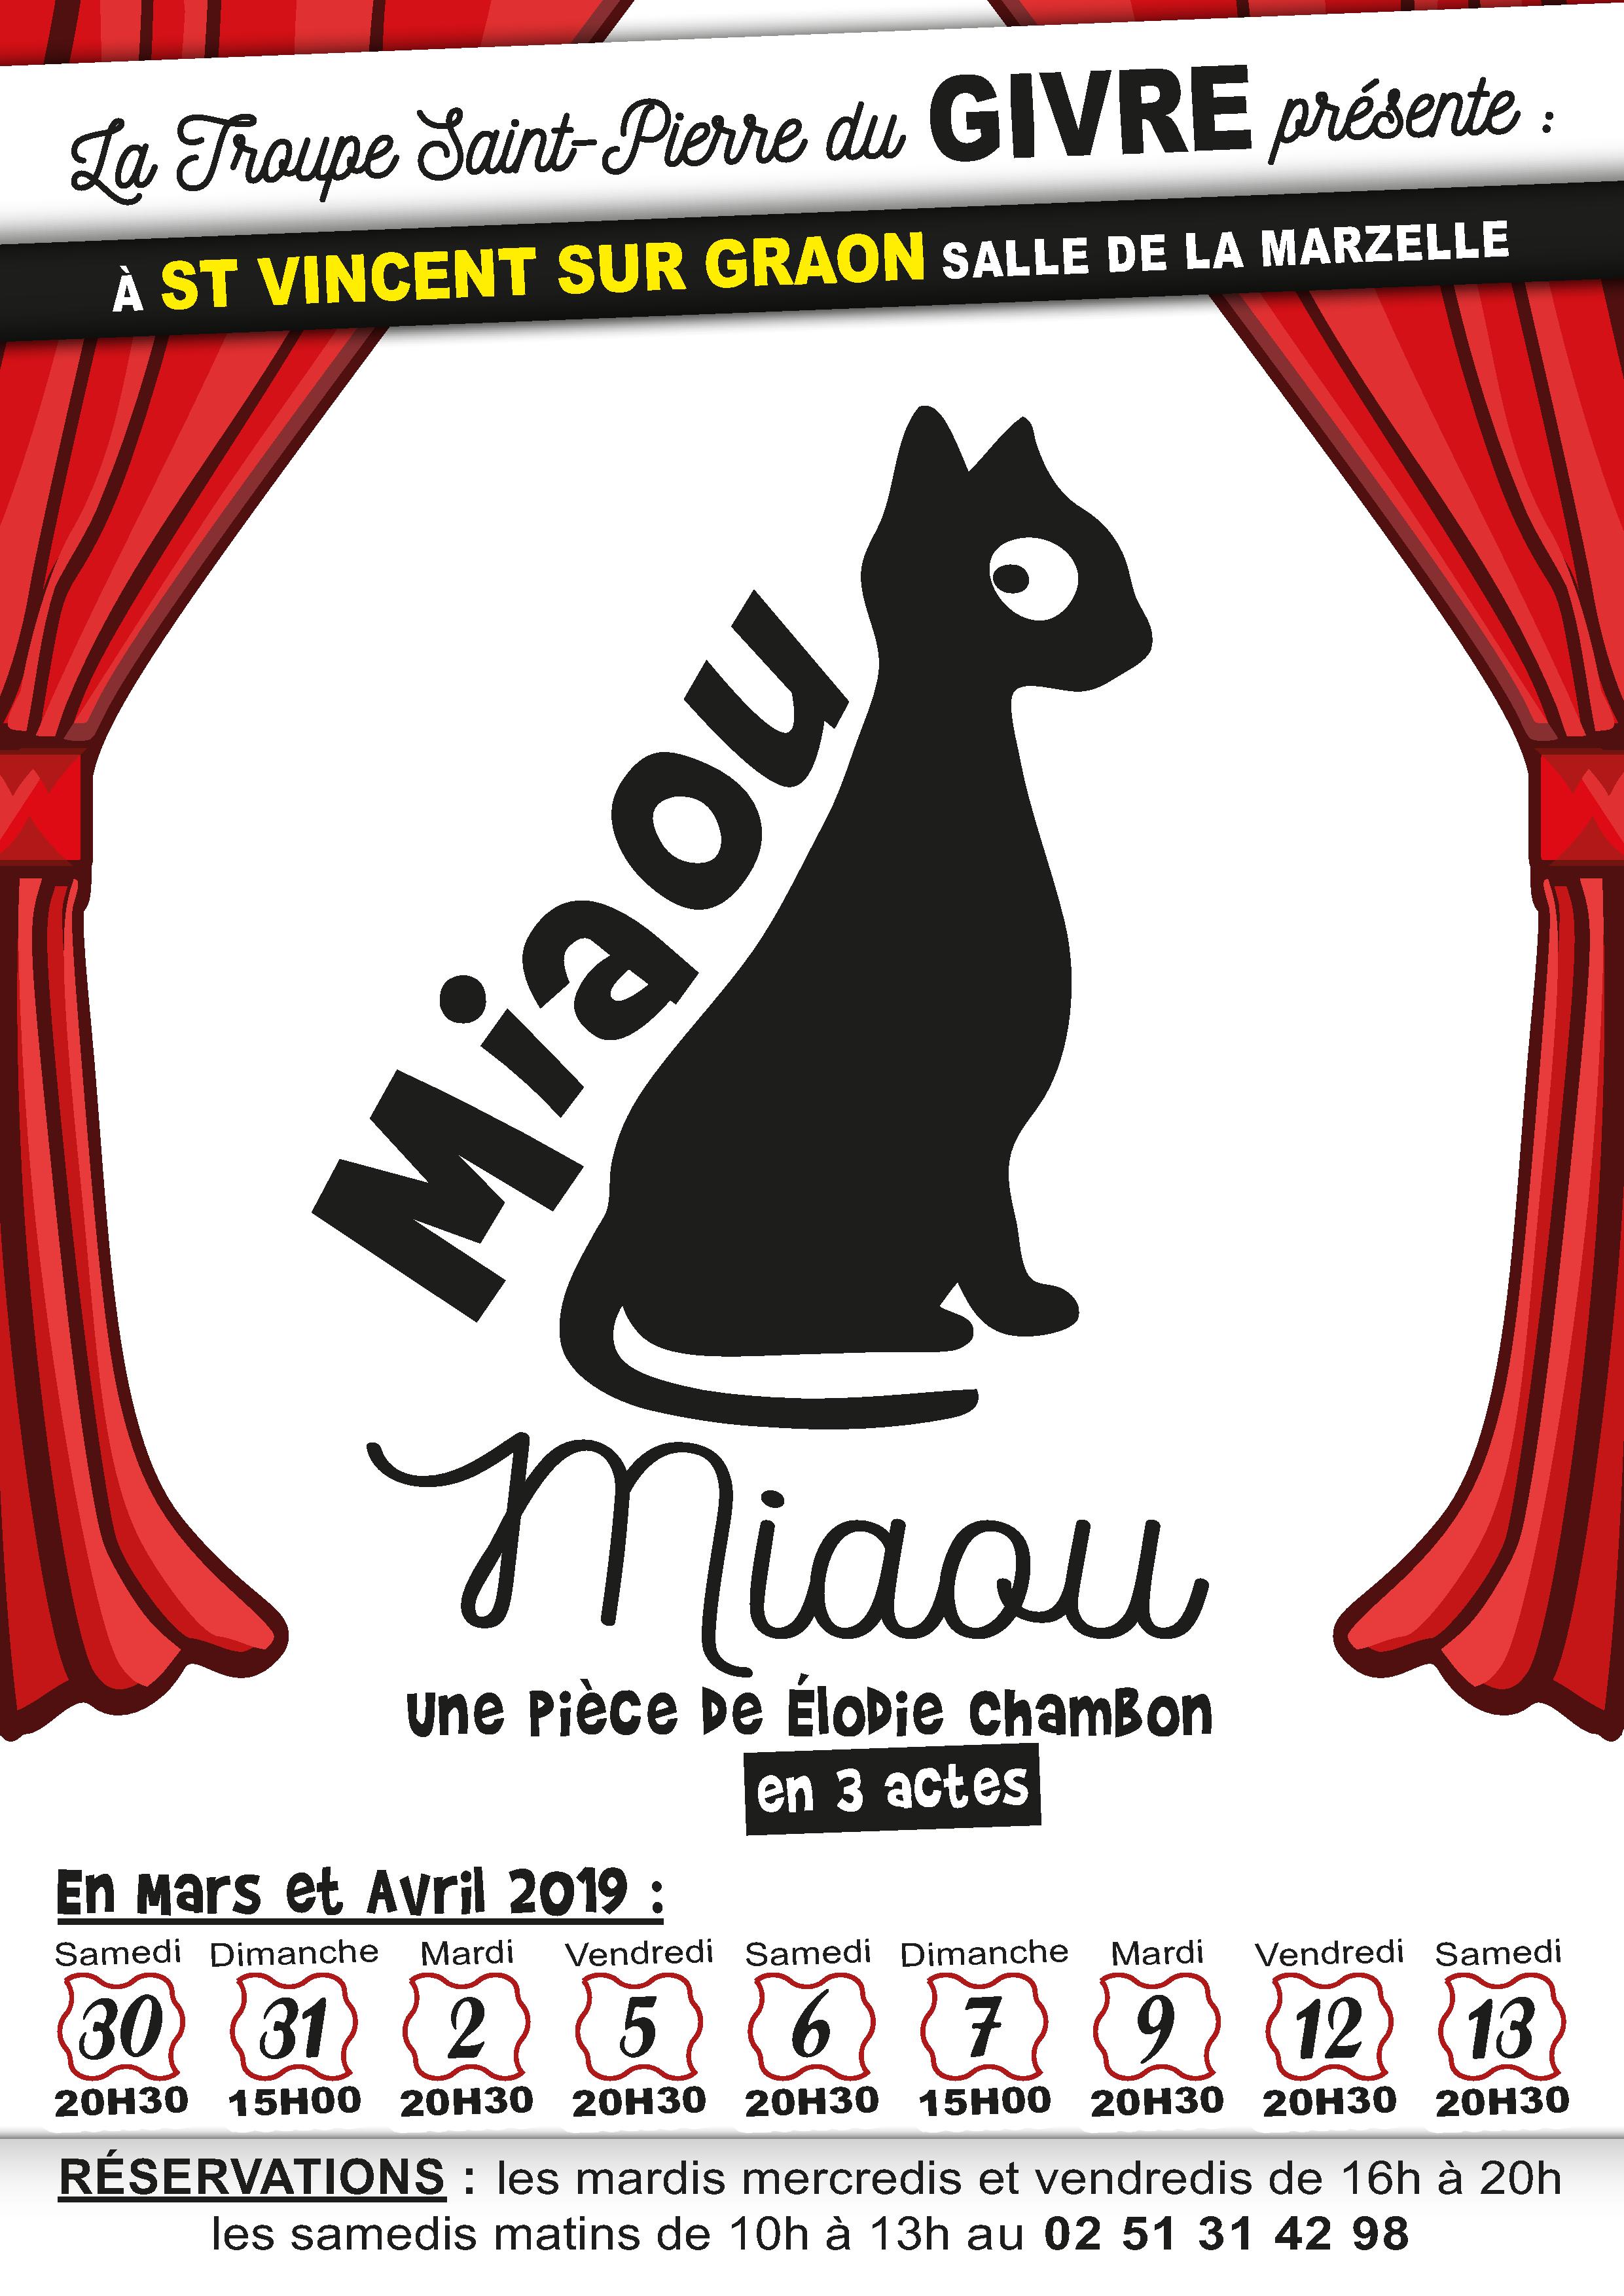 Saint-Vincent-sur-Graon: théâtre avec «Miaou Miaou» par la troupe St Pierre du Givre